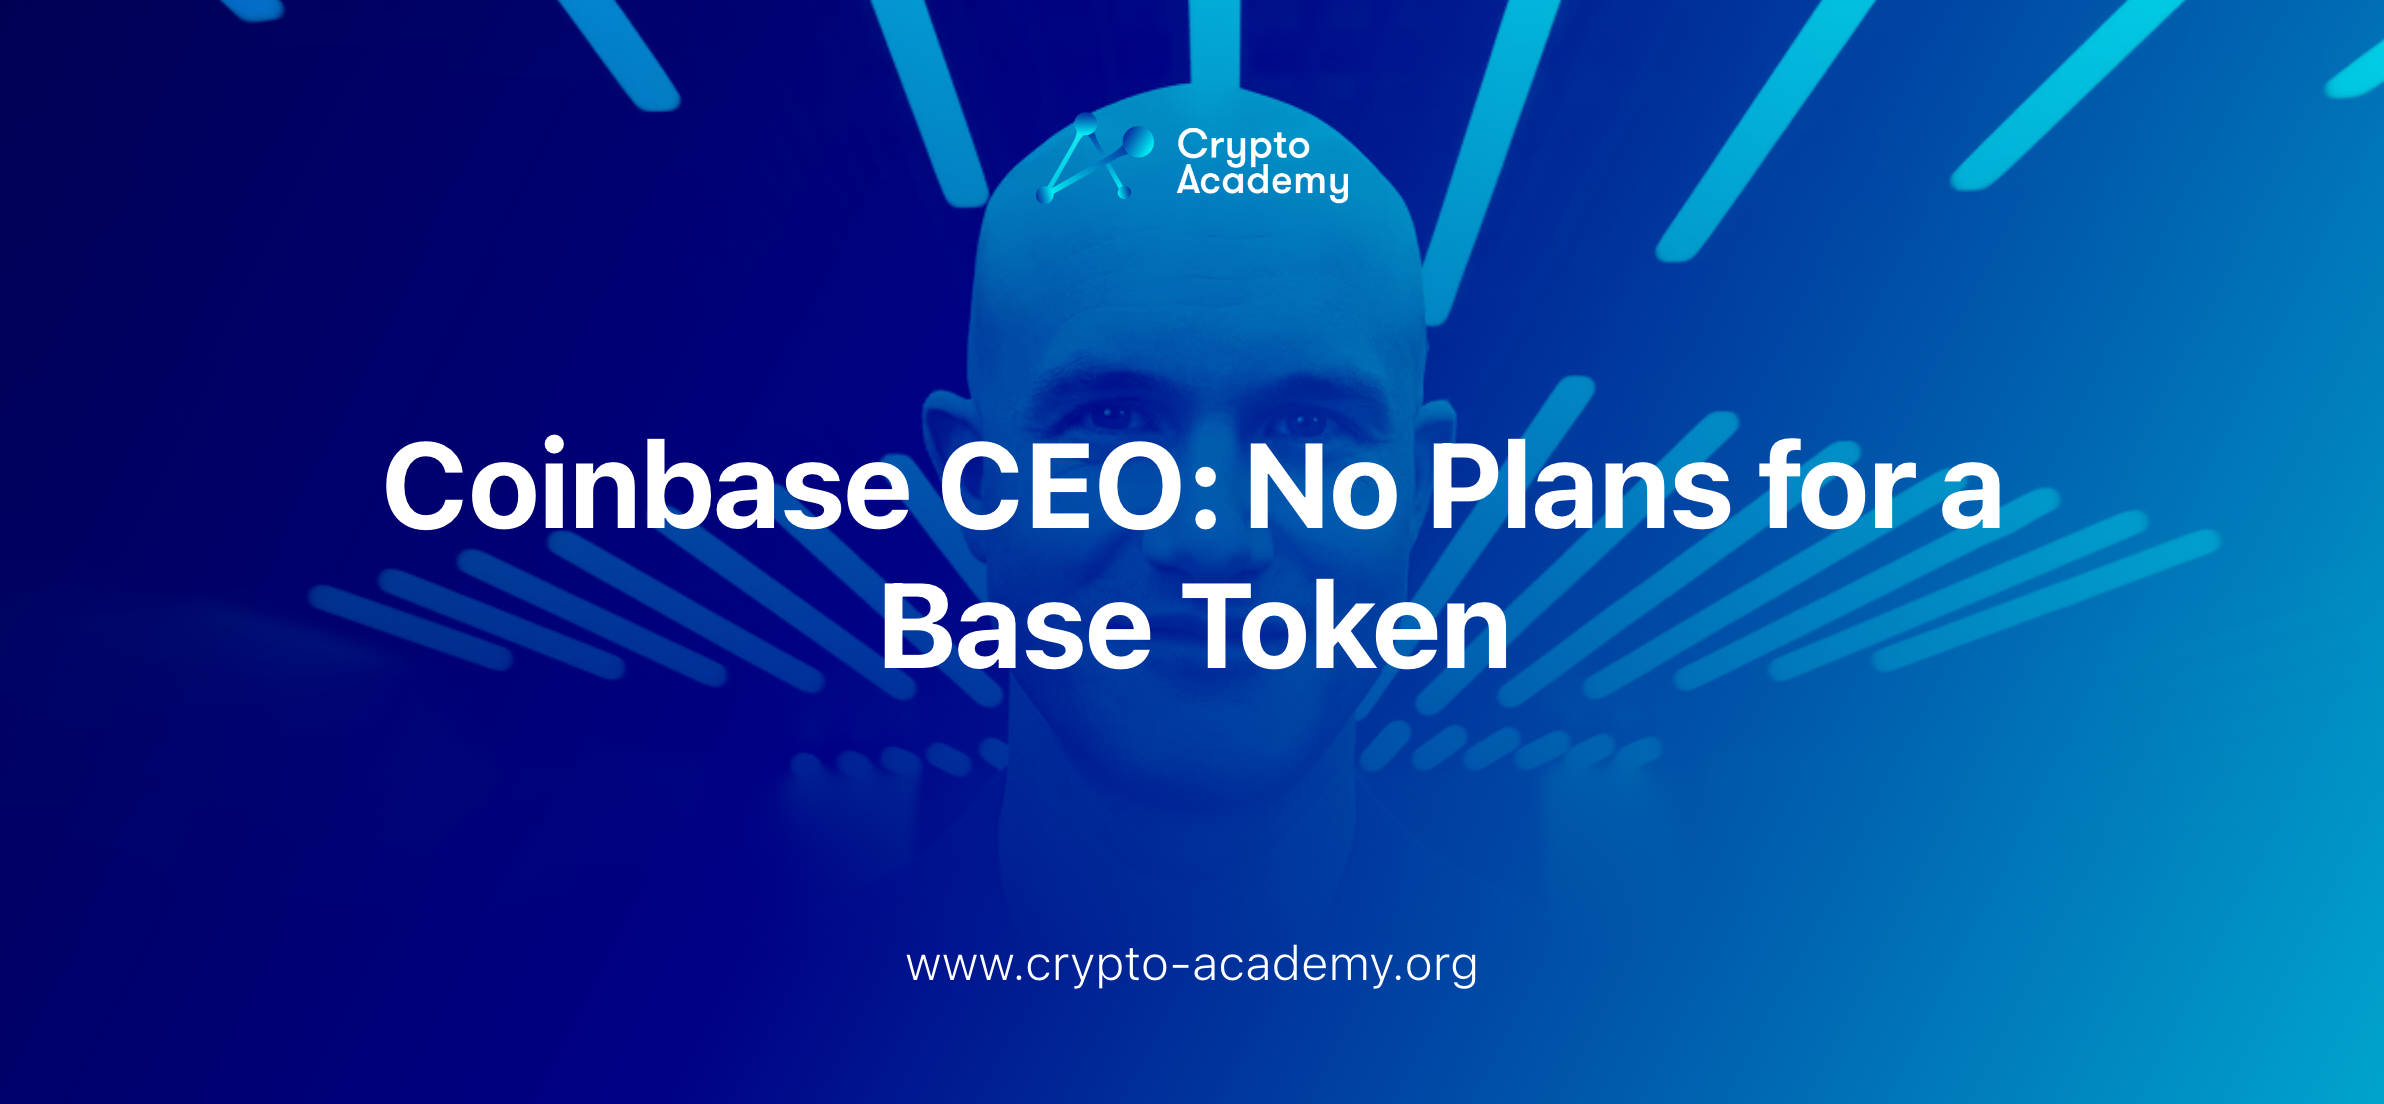 Coinbase CEO: No Plans for a Base Token